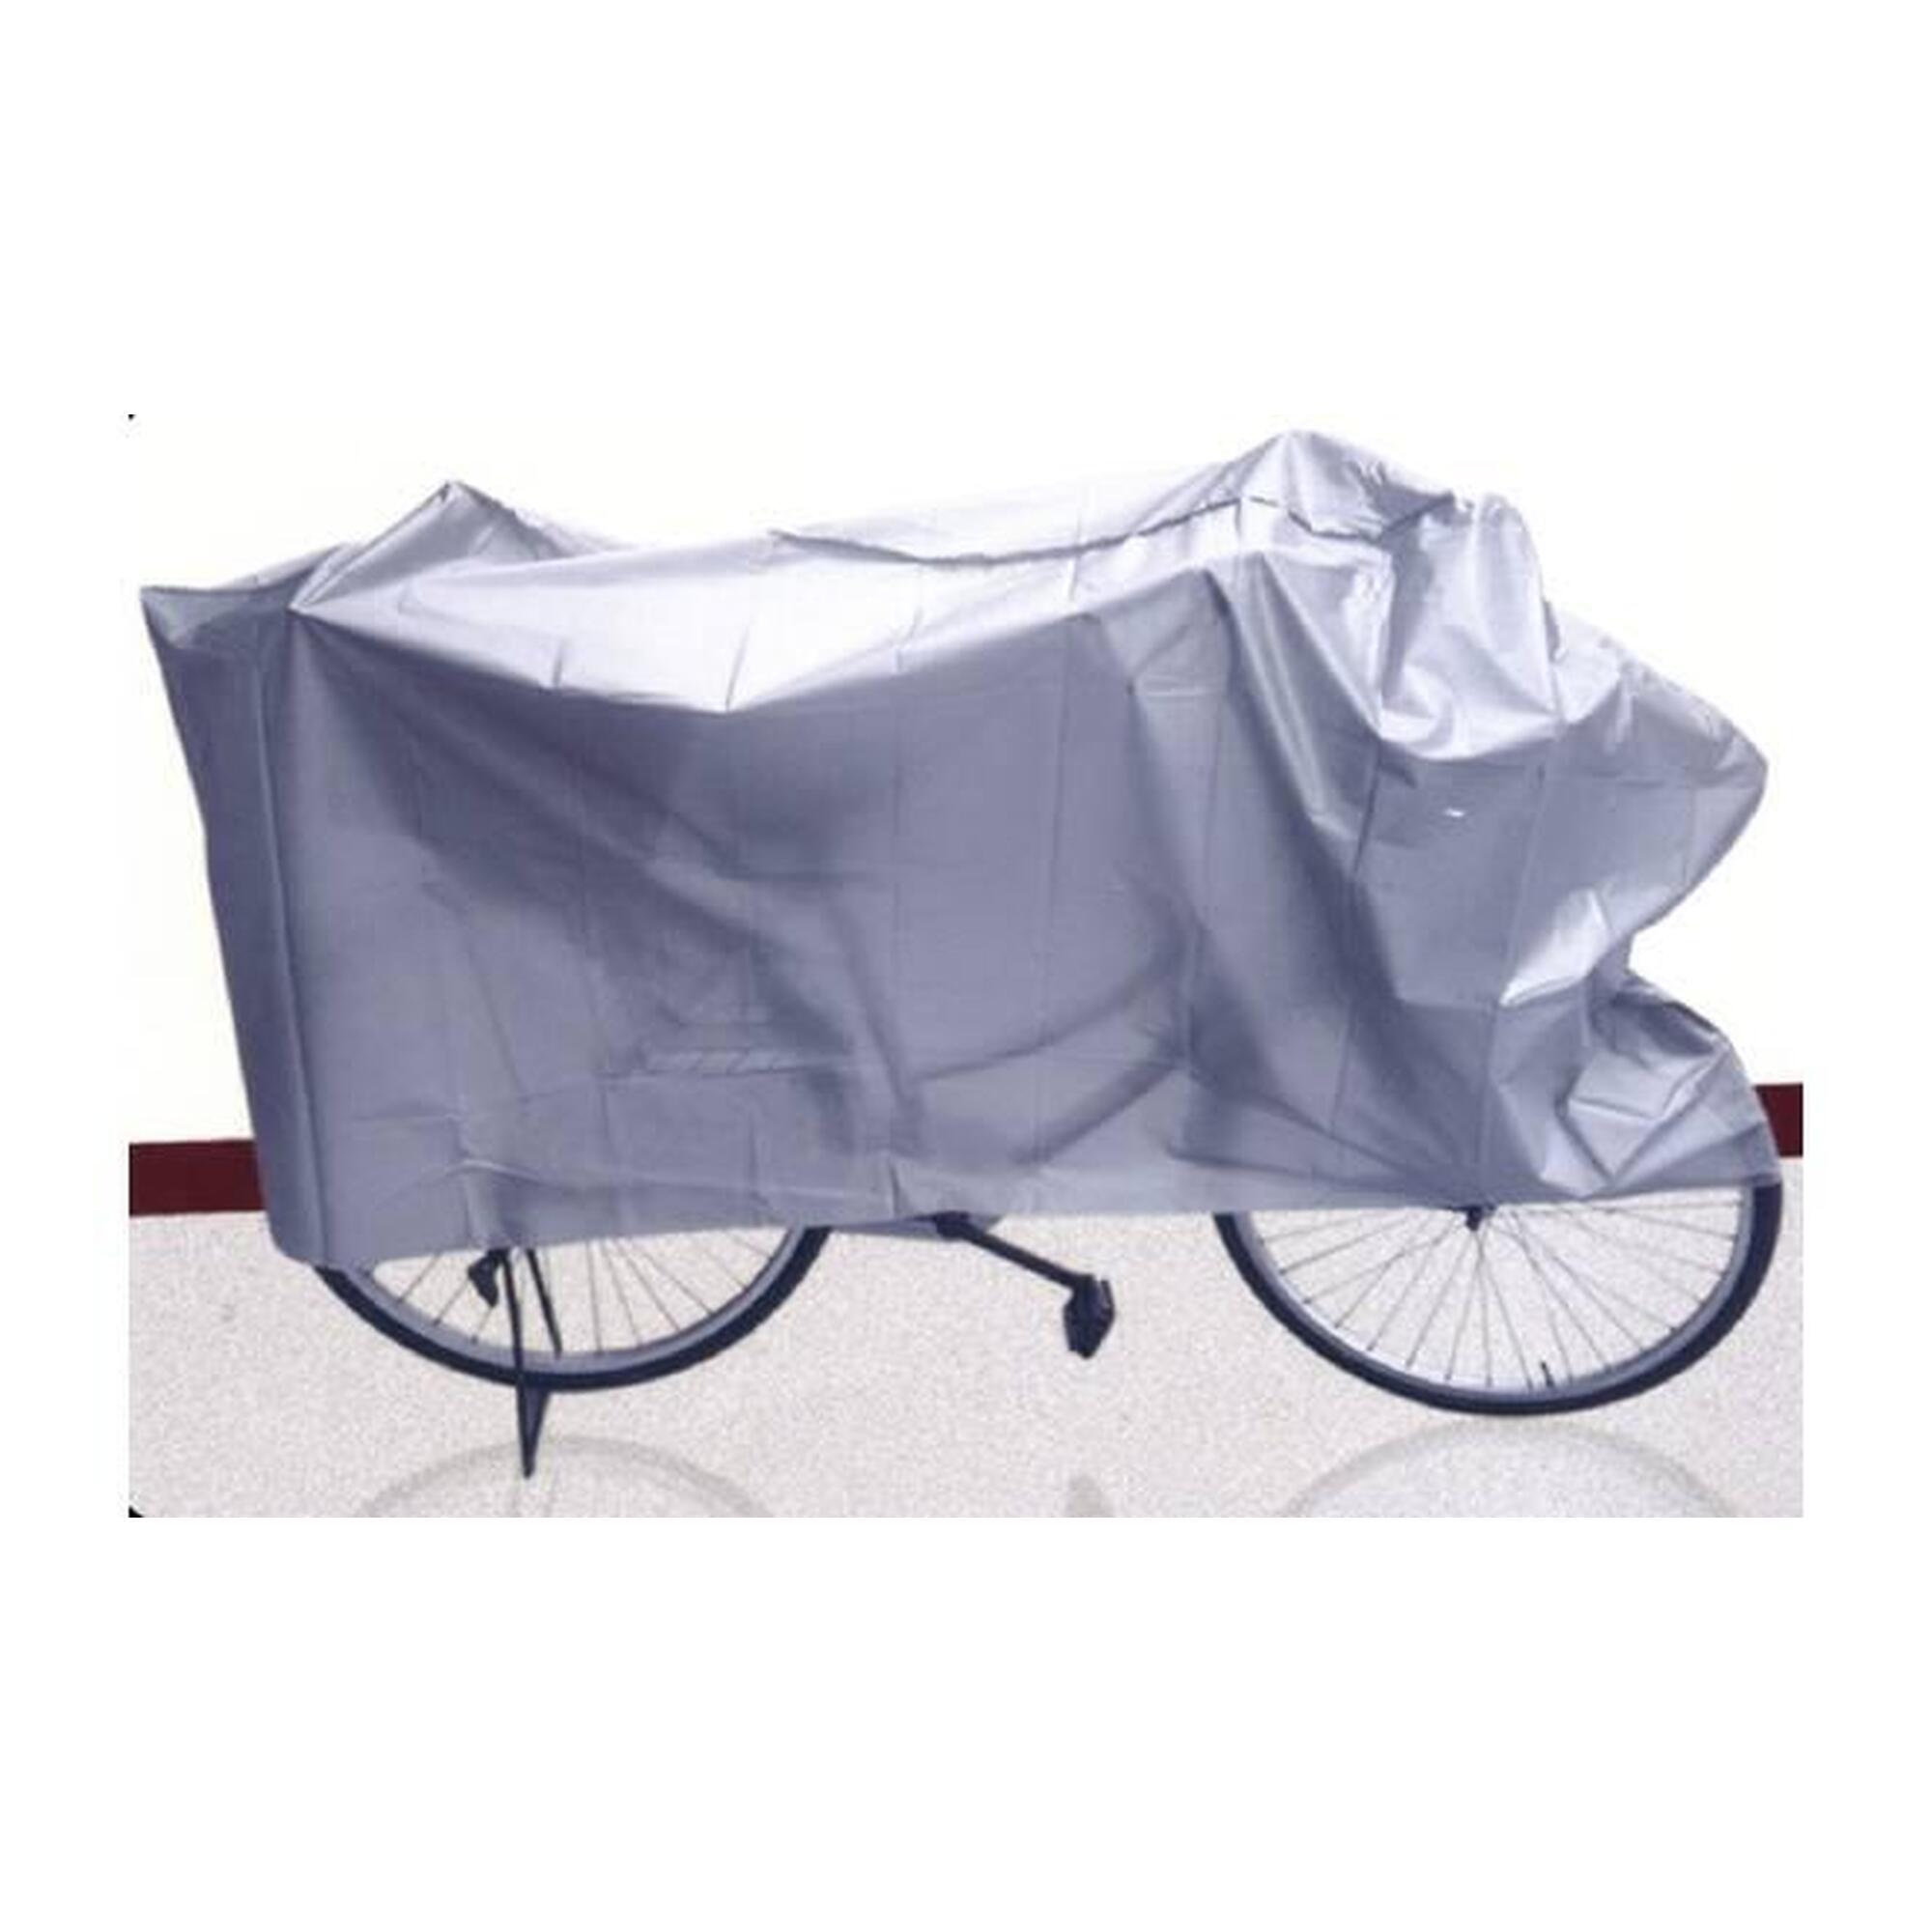 Housse de protection pour vélo 200 x 100 cm - gris